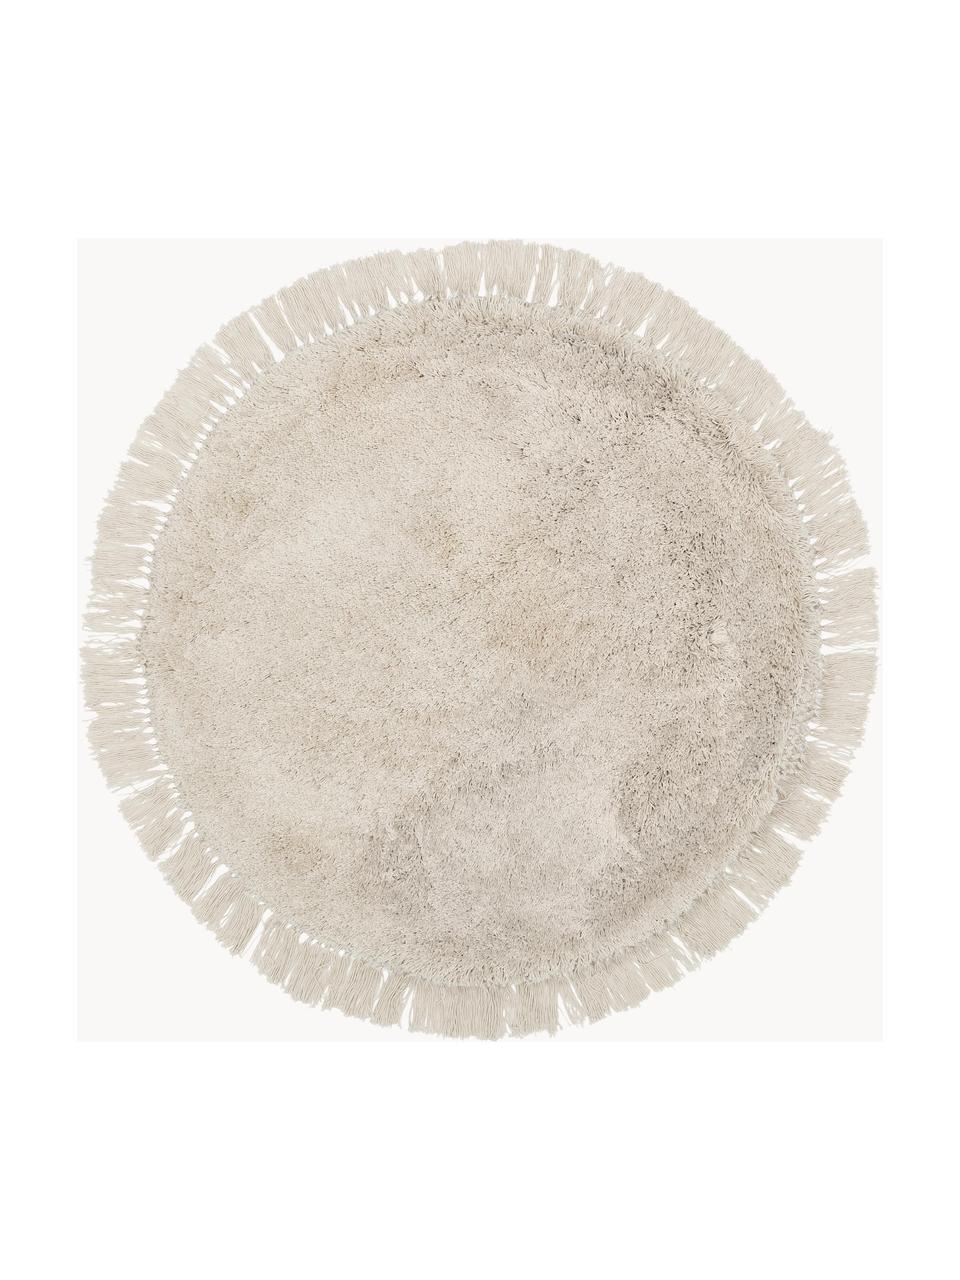 Pluizig rond hoogpolig vloerkleed Dreamy met franjes, Onderzijde: 100% wol, gerecycled Het , Beige, Ø 150 cm (maat M)